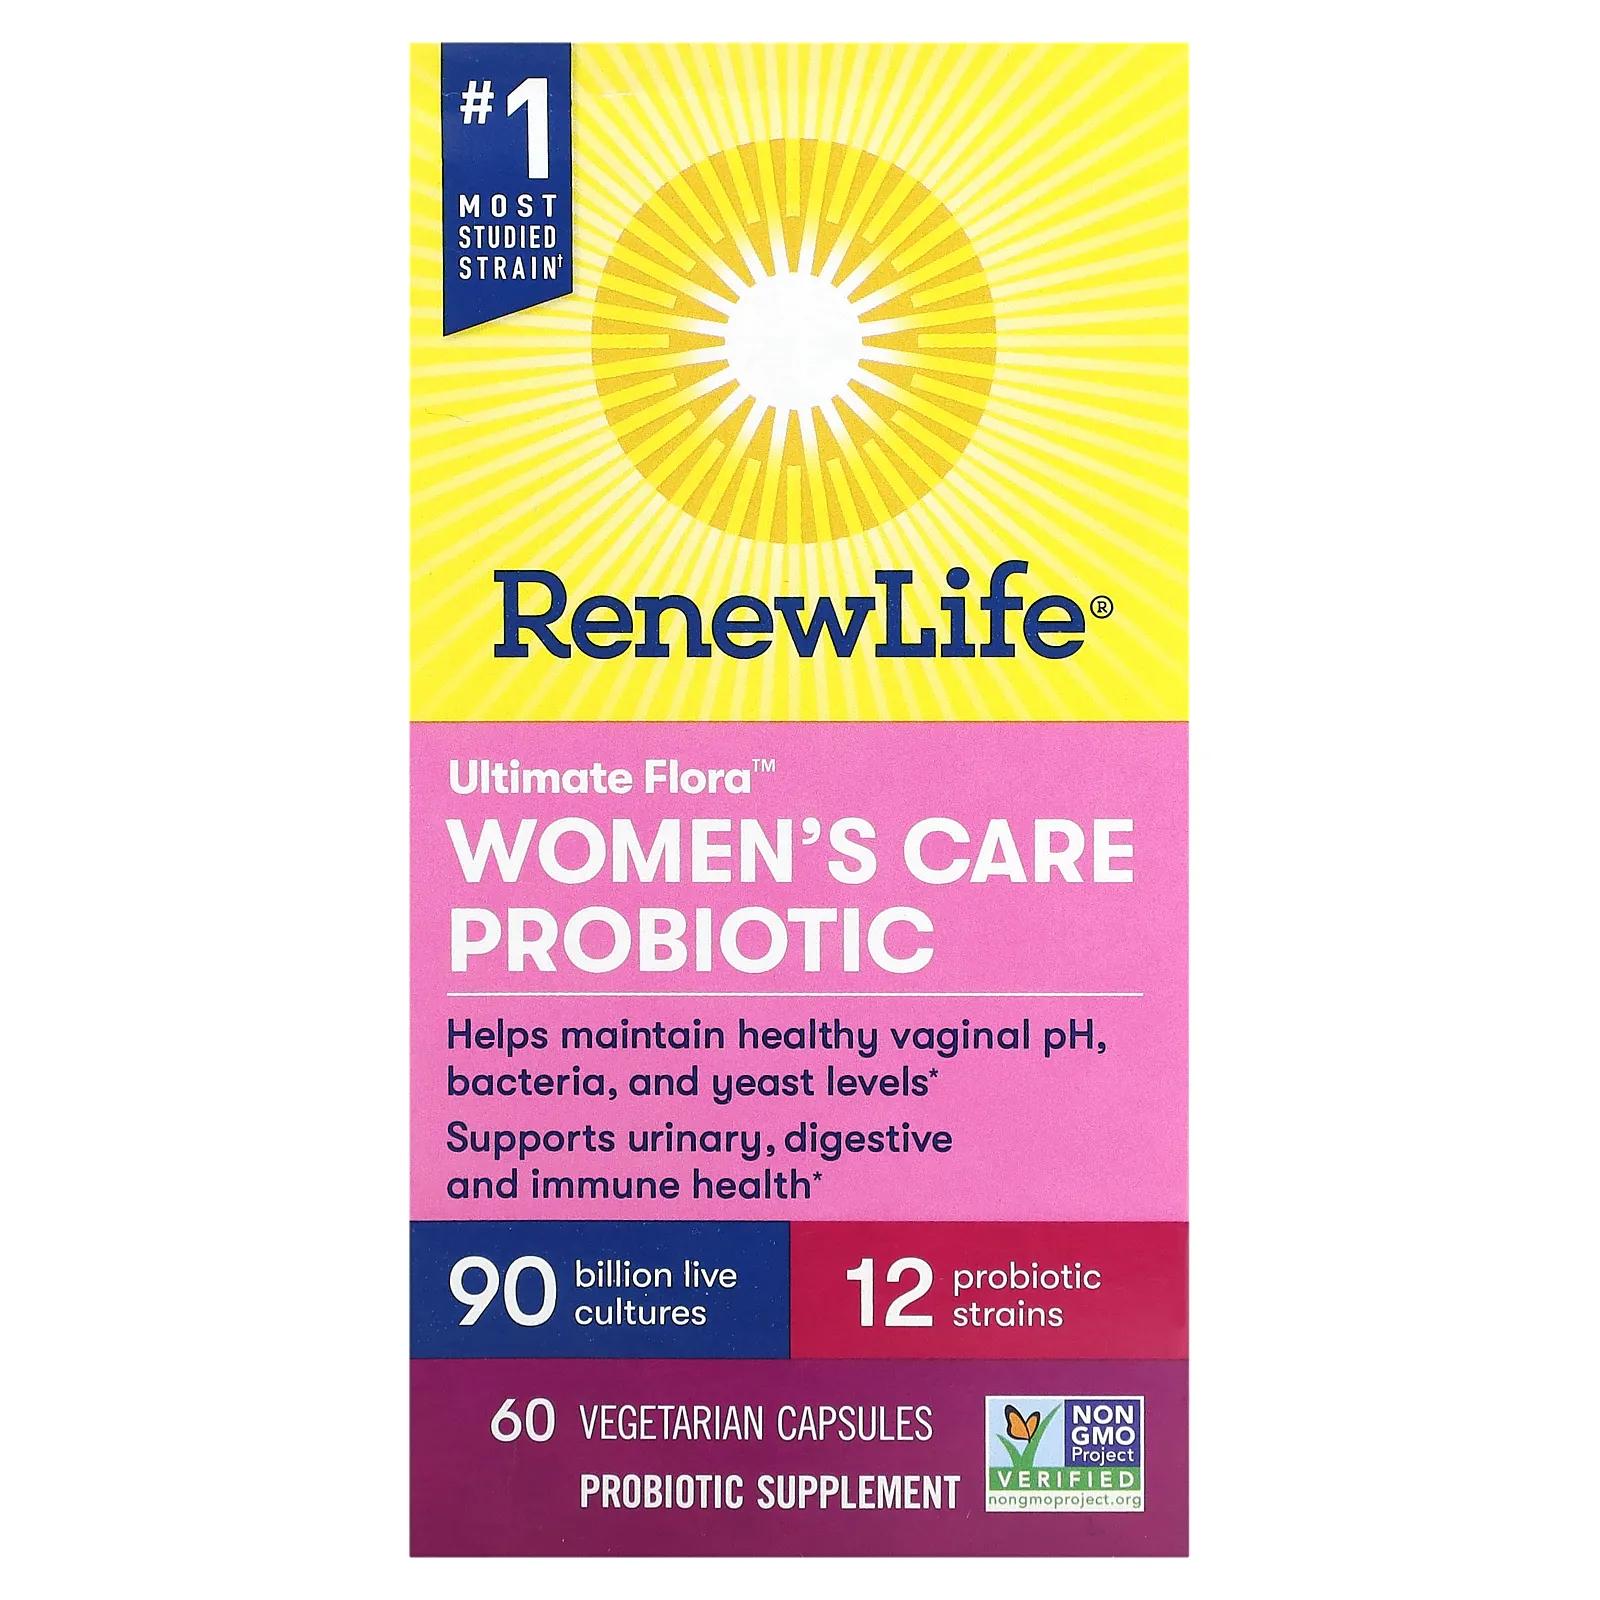 Renew Life Пробиотик Ultimate Flora Women's Care 90 миллиардов 60 вег капсул renew life направленное действие parasmart микробиологическое очищение 15 дневная программа из 2 частей